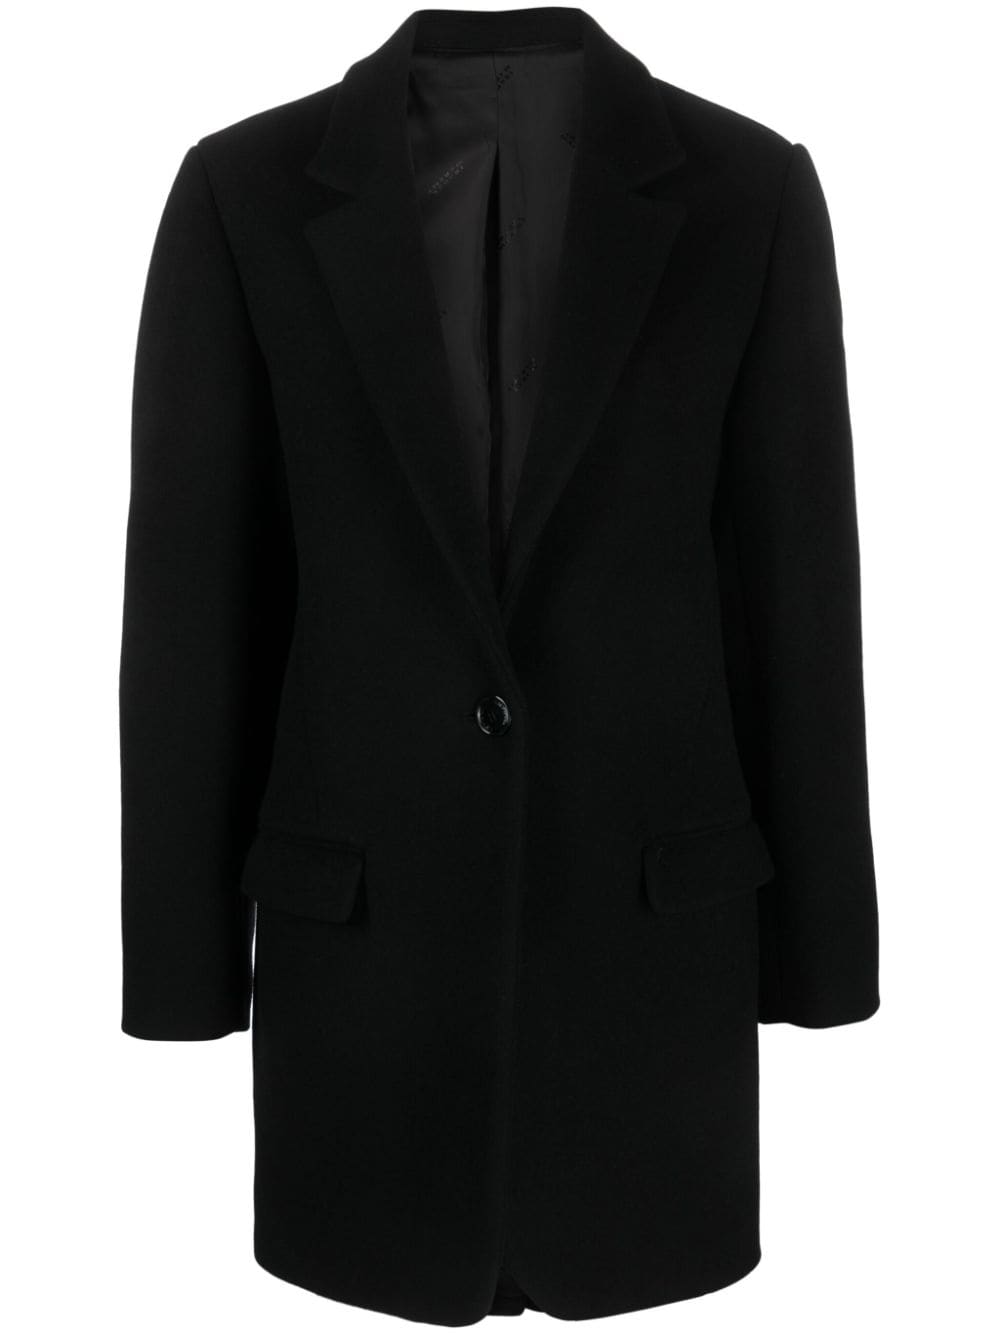 Áo Jacket JILINKA Thời Trang Đen Siêu Sang Trọng Làm Từ Lông Cừu & Cashmere